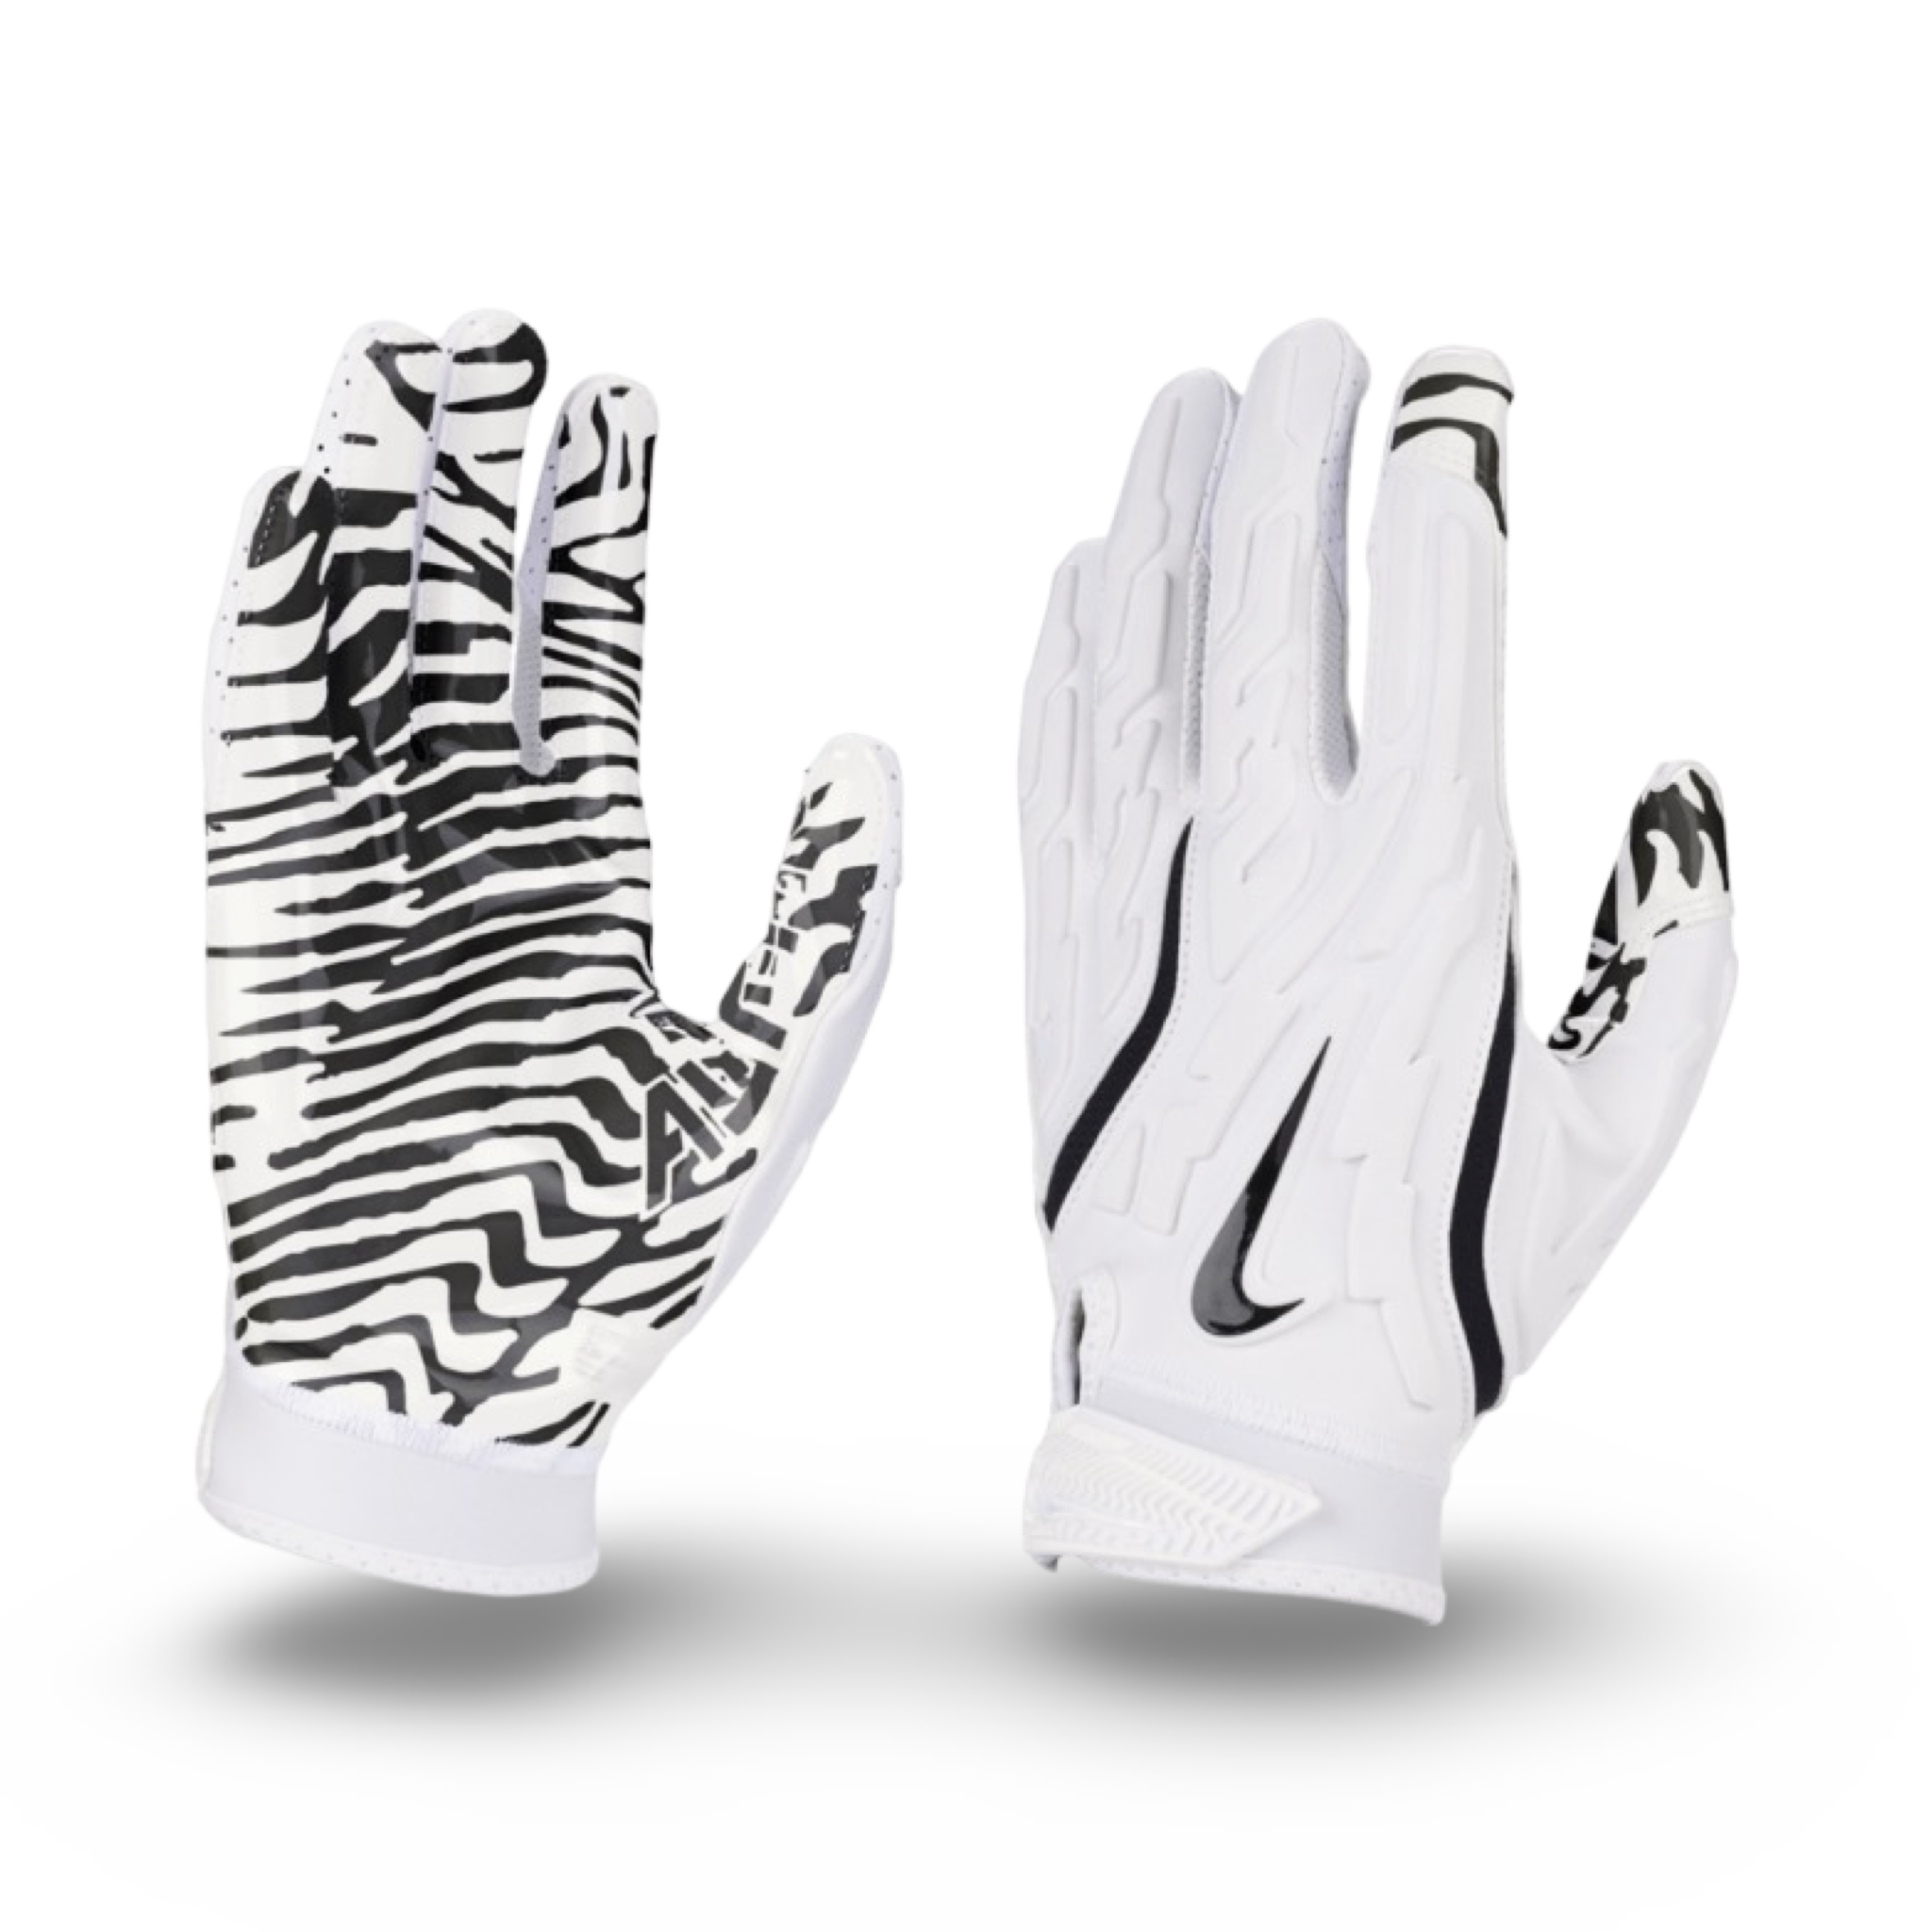 Nike Superbad 7.0 Football Gloves